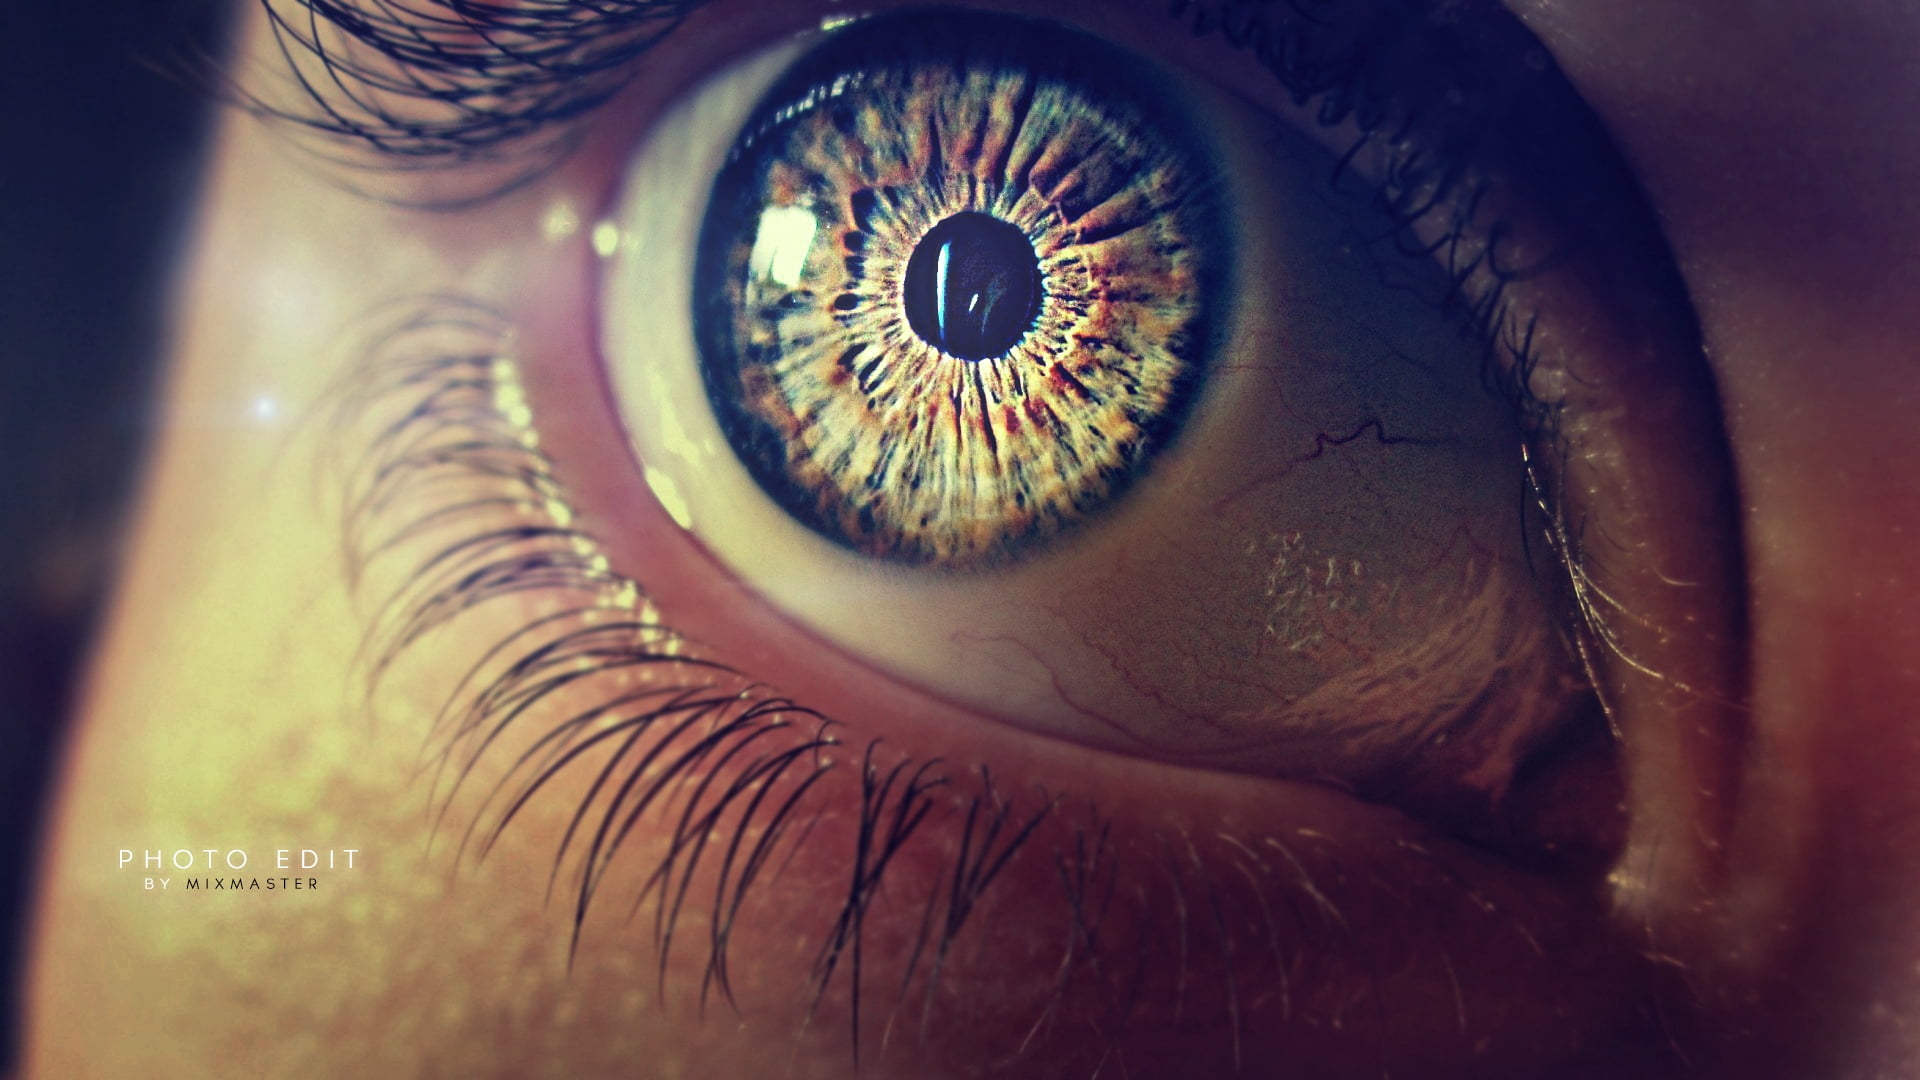 human eye, pupil, eyelashes, eyeball, iris - Eye, close-up, looking